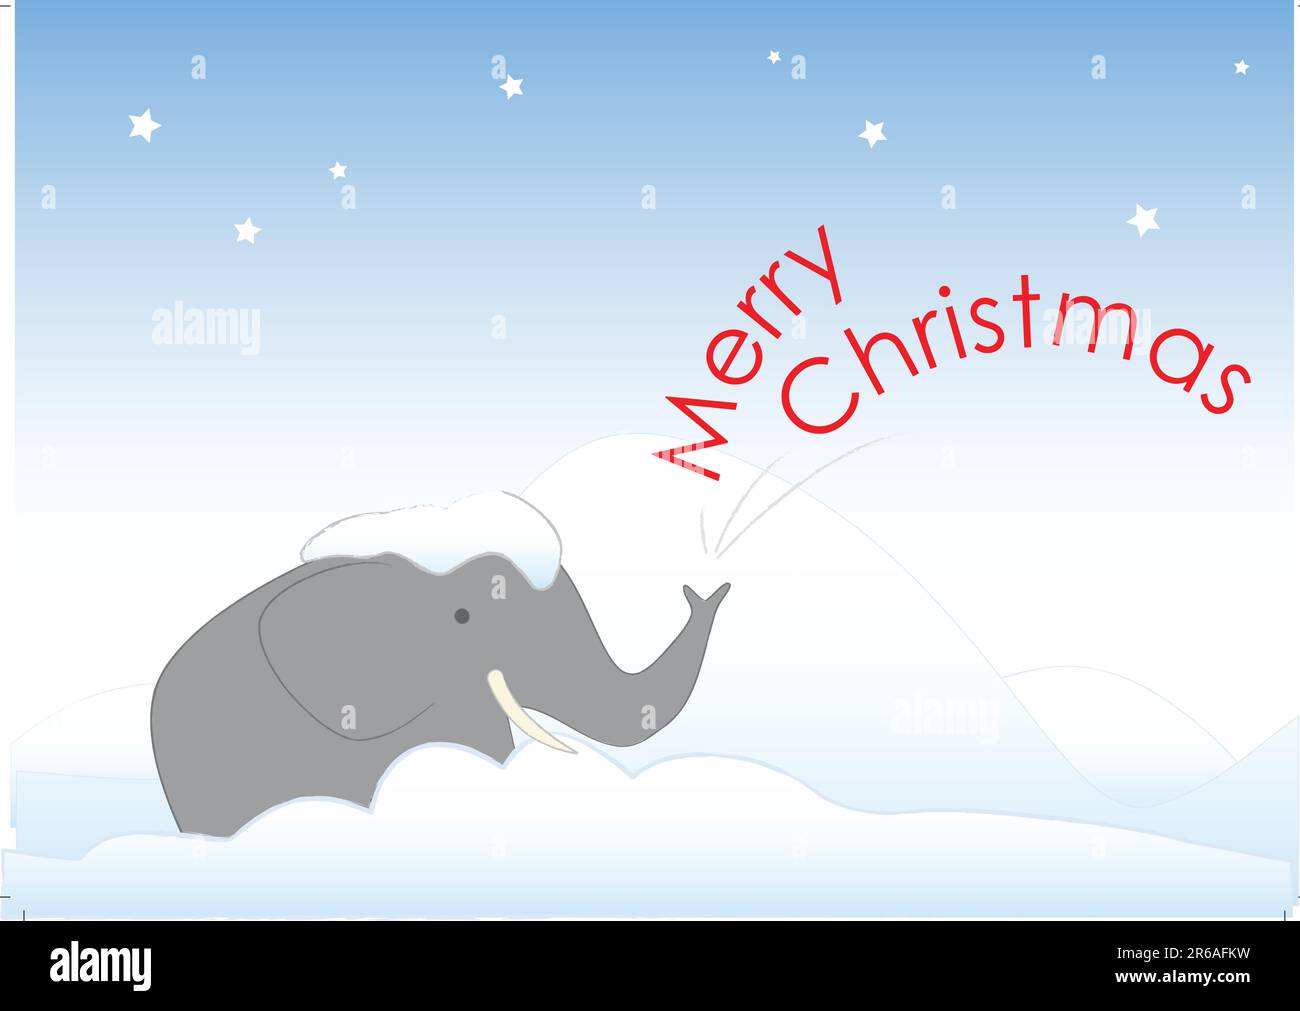 Mr. Elephant steckt im Schnee fest. Er wünscht dir frohe Weihnachten. Er möchte auch von der Kälte aufgenommen werden und einen großen Schluck Eierpunsch trinken. Stock Vektor